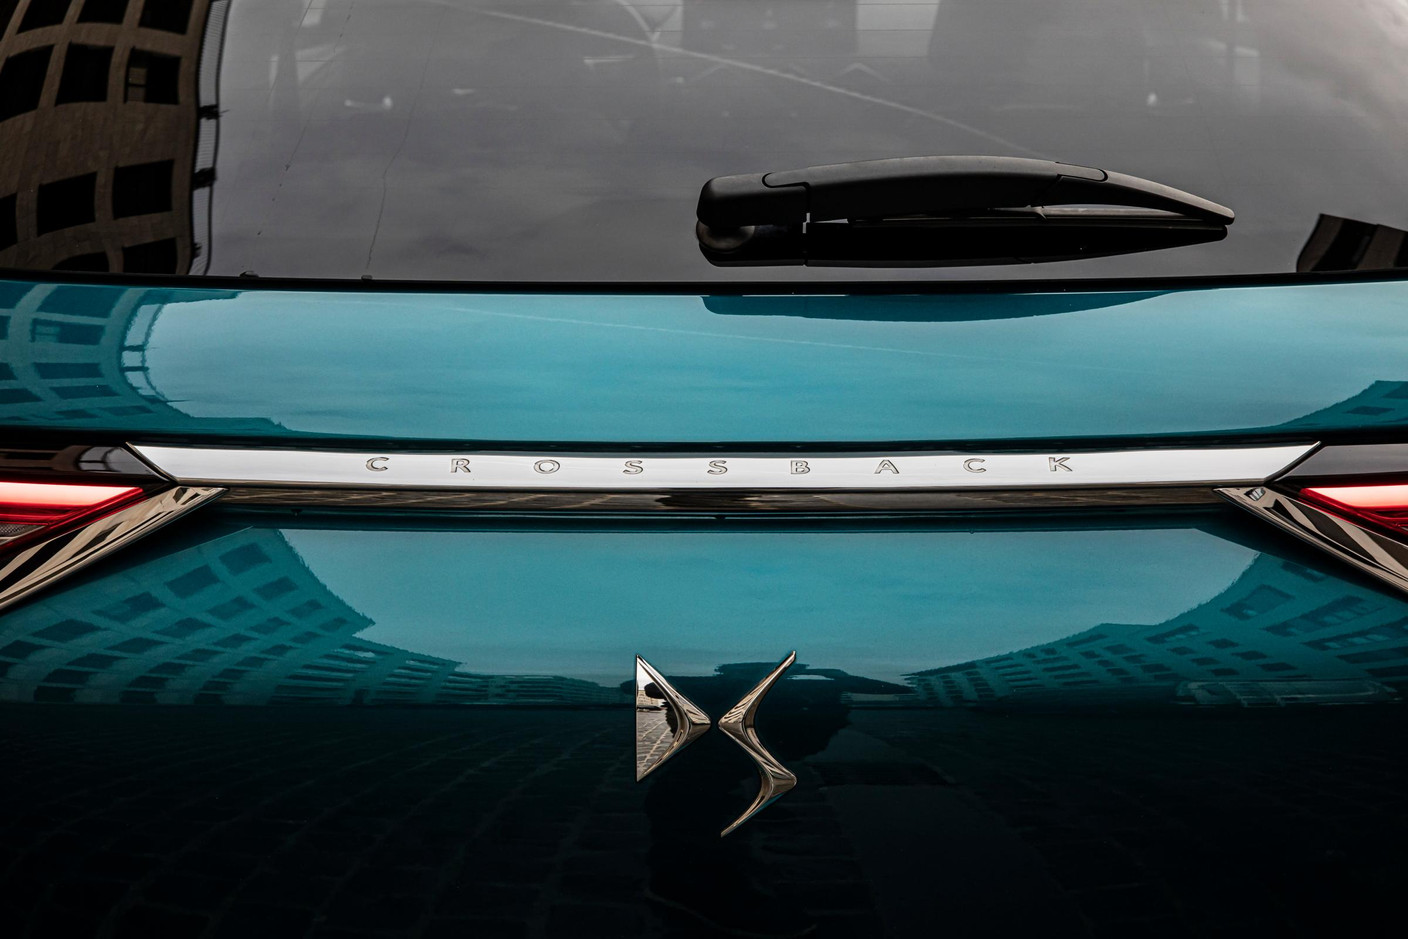 Ce petit DS 3 Crossback est plutôt réussi si on aime les voitures dont le design, tant extérieur qu’intérieur, a de la personnalité.  (Photo: Jan Hanrion / Maison Moderne)